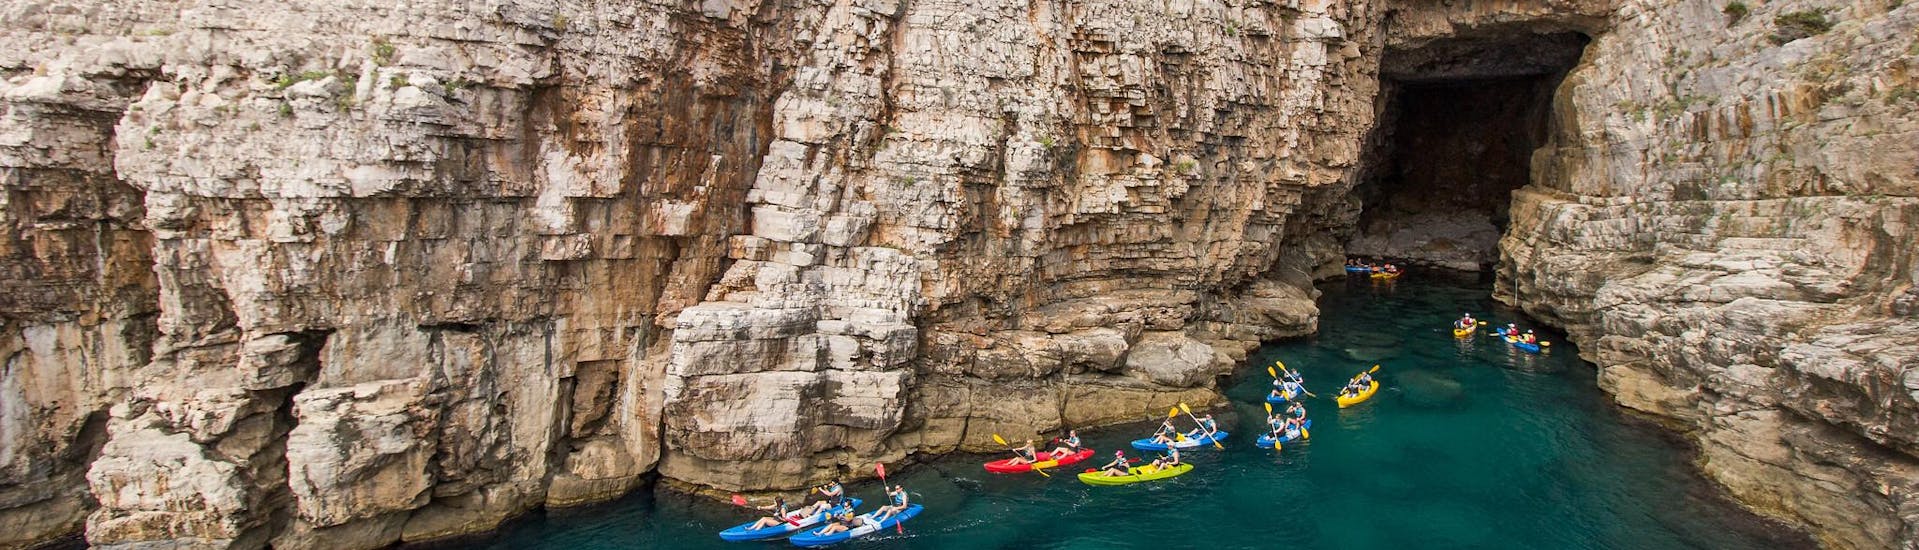 Des personnes s'amusent lors d'une excursion en kayak dans les grottes.